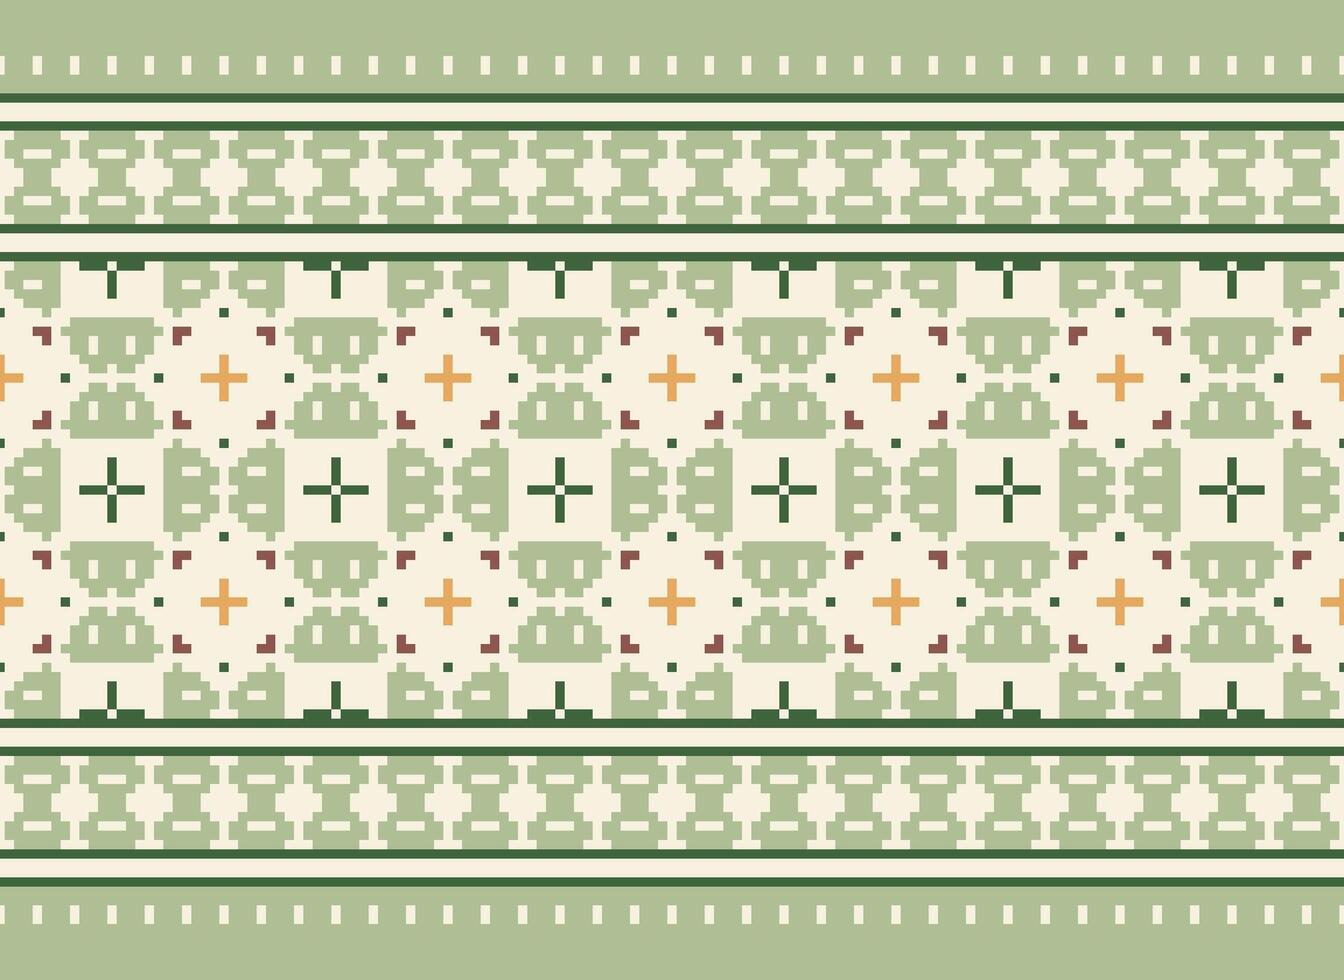 une floral pixel art modèle sur gris arrière-plan.géométrique ethnique Oriental broderie vecteur illustration. pixel style, abstrait arrière-plan, traverser point.design pour texture, tissu, chiffon, foulard, impression